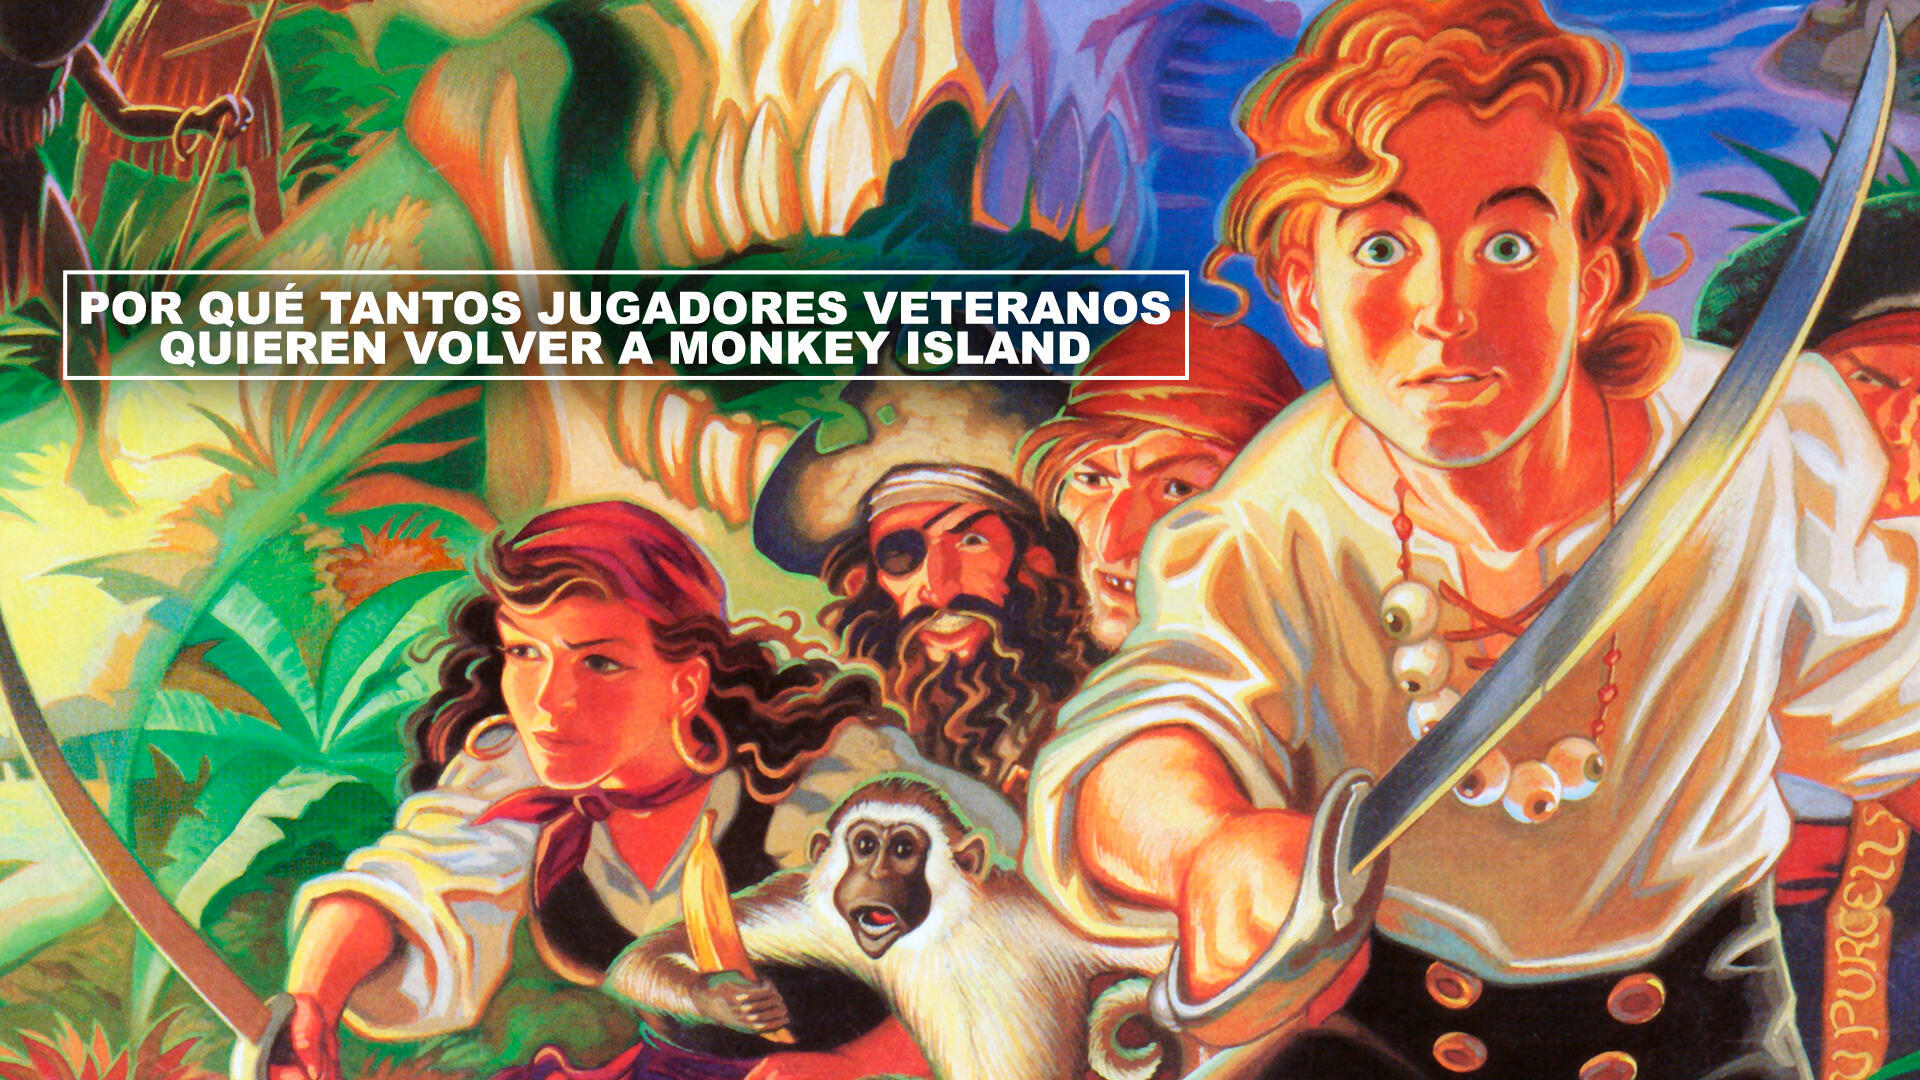 Por qu tantos jugadores veteranos quieren volver a Monkey Island